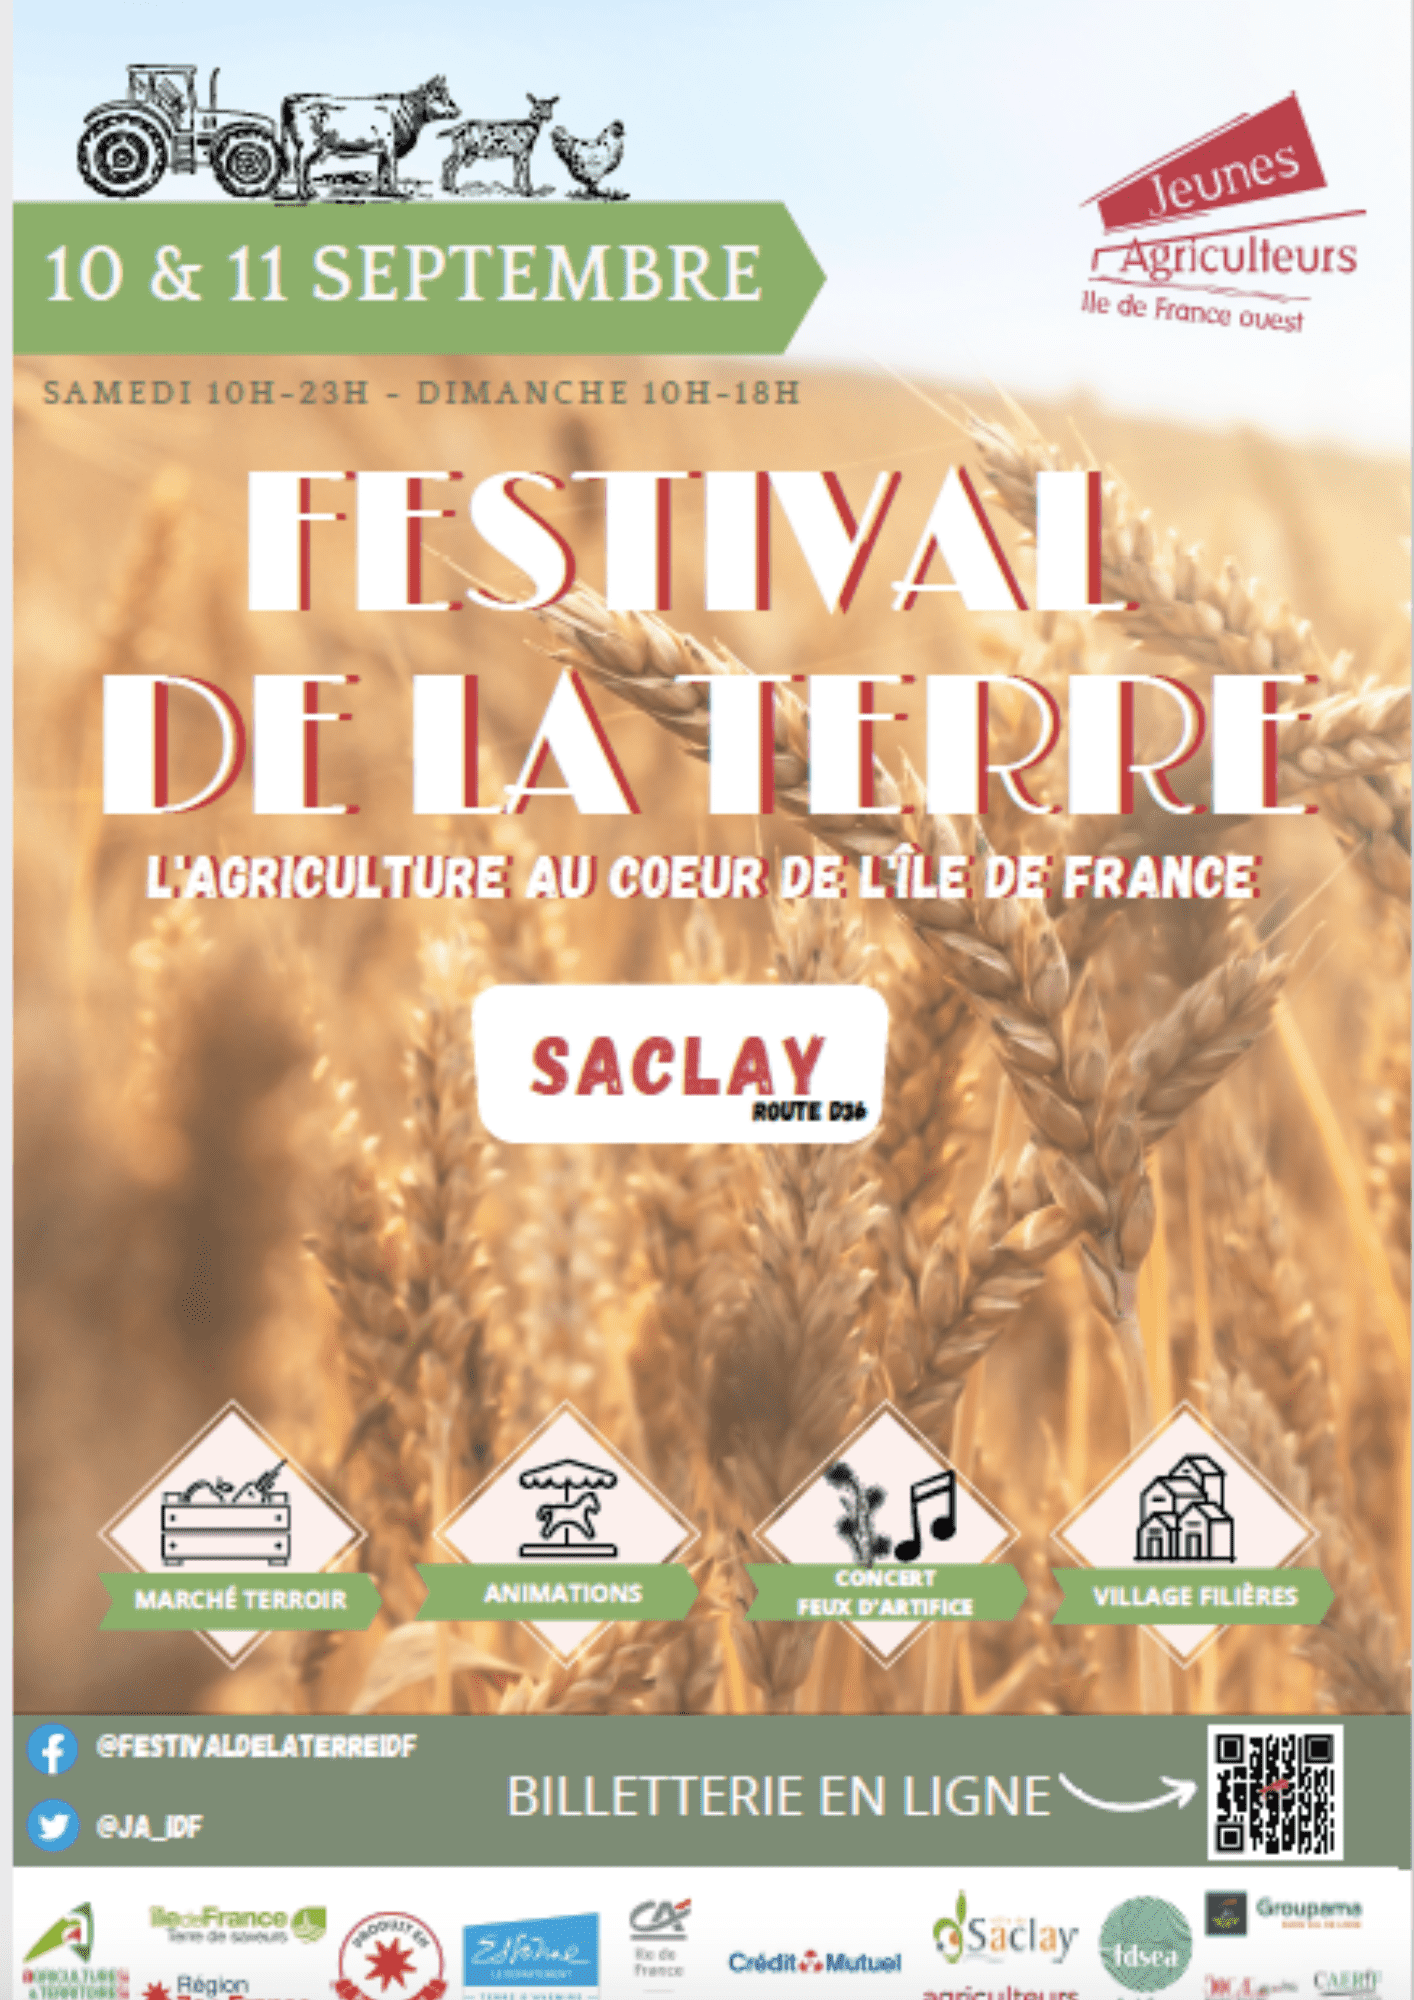 Le Festival de la Terre… à la découverte de l’agriculture en Ile-de-France